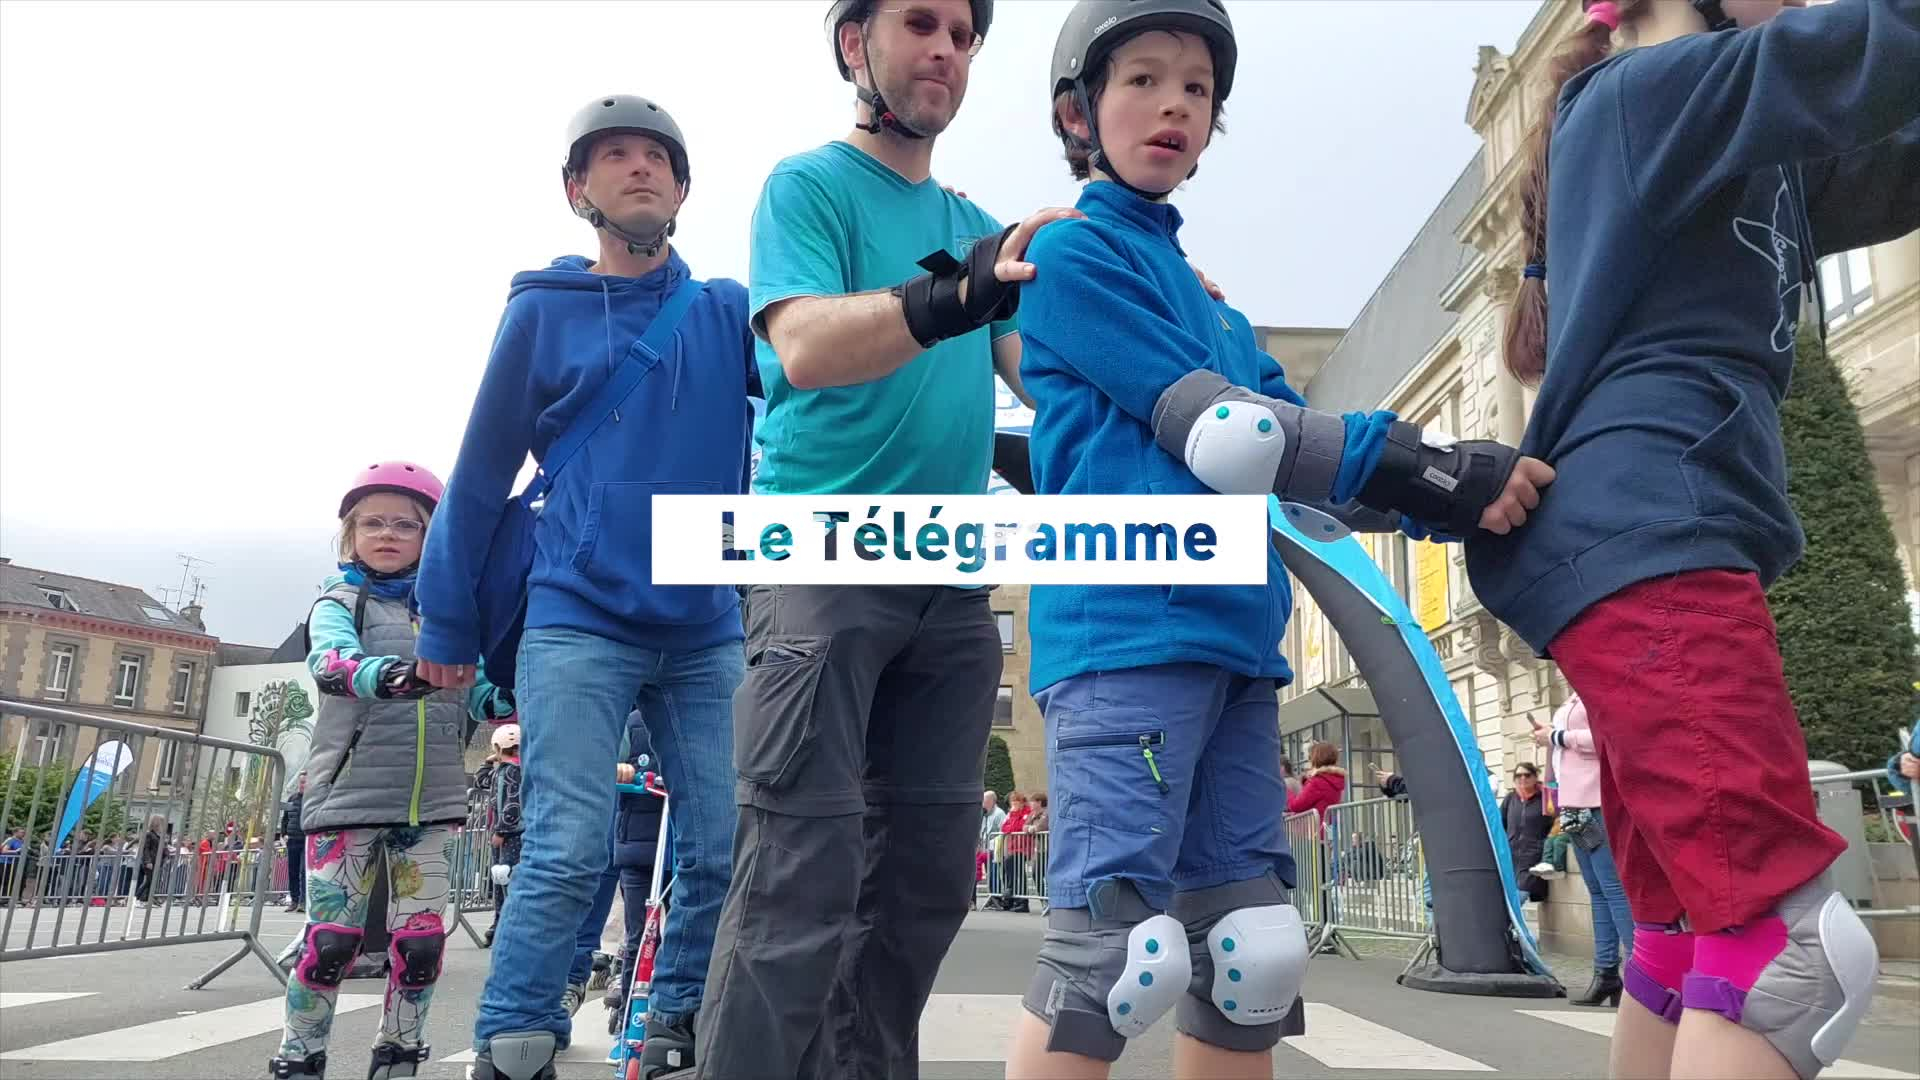 Chenille humaine sur patins à roulettes : ils étaient 233 à Saint-Brieuc pour établir un « record du monde » ! (Le Télégramme)